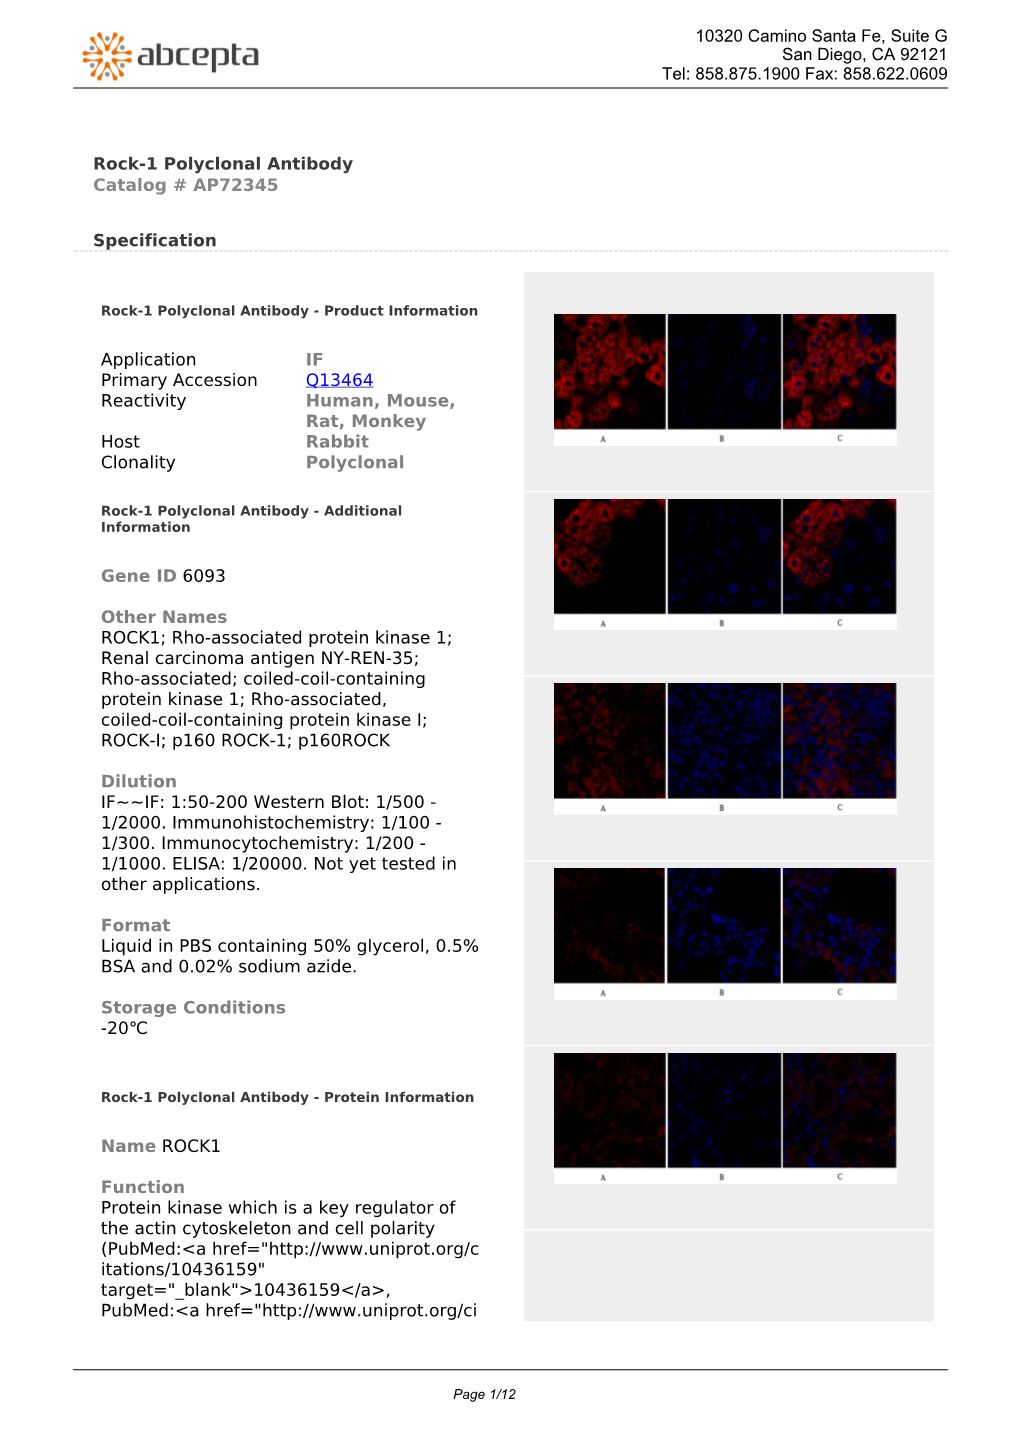 Rock-1 Polyclonal Antibody Catalog # AP72345